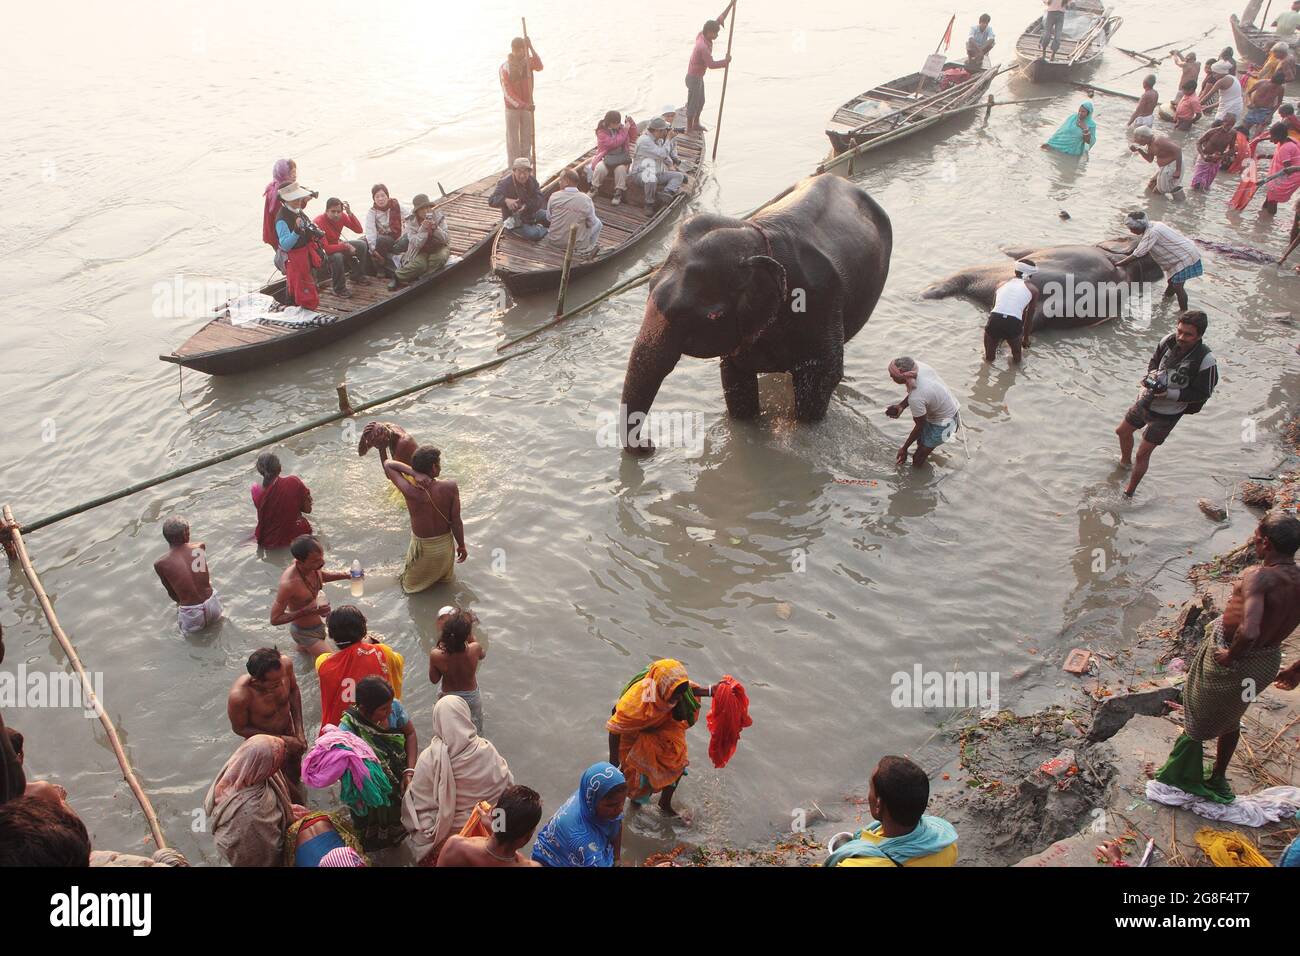 Les éléphants sont baignés et nettoyés dans la rivière Ganda à Sonpur Fair, la plus grande foire de vente d'animaux en Asie. La foire a plus de mille ans. Banque D'Images